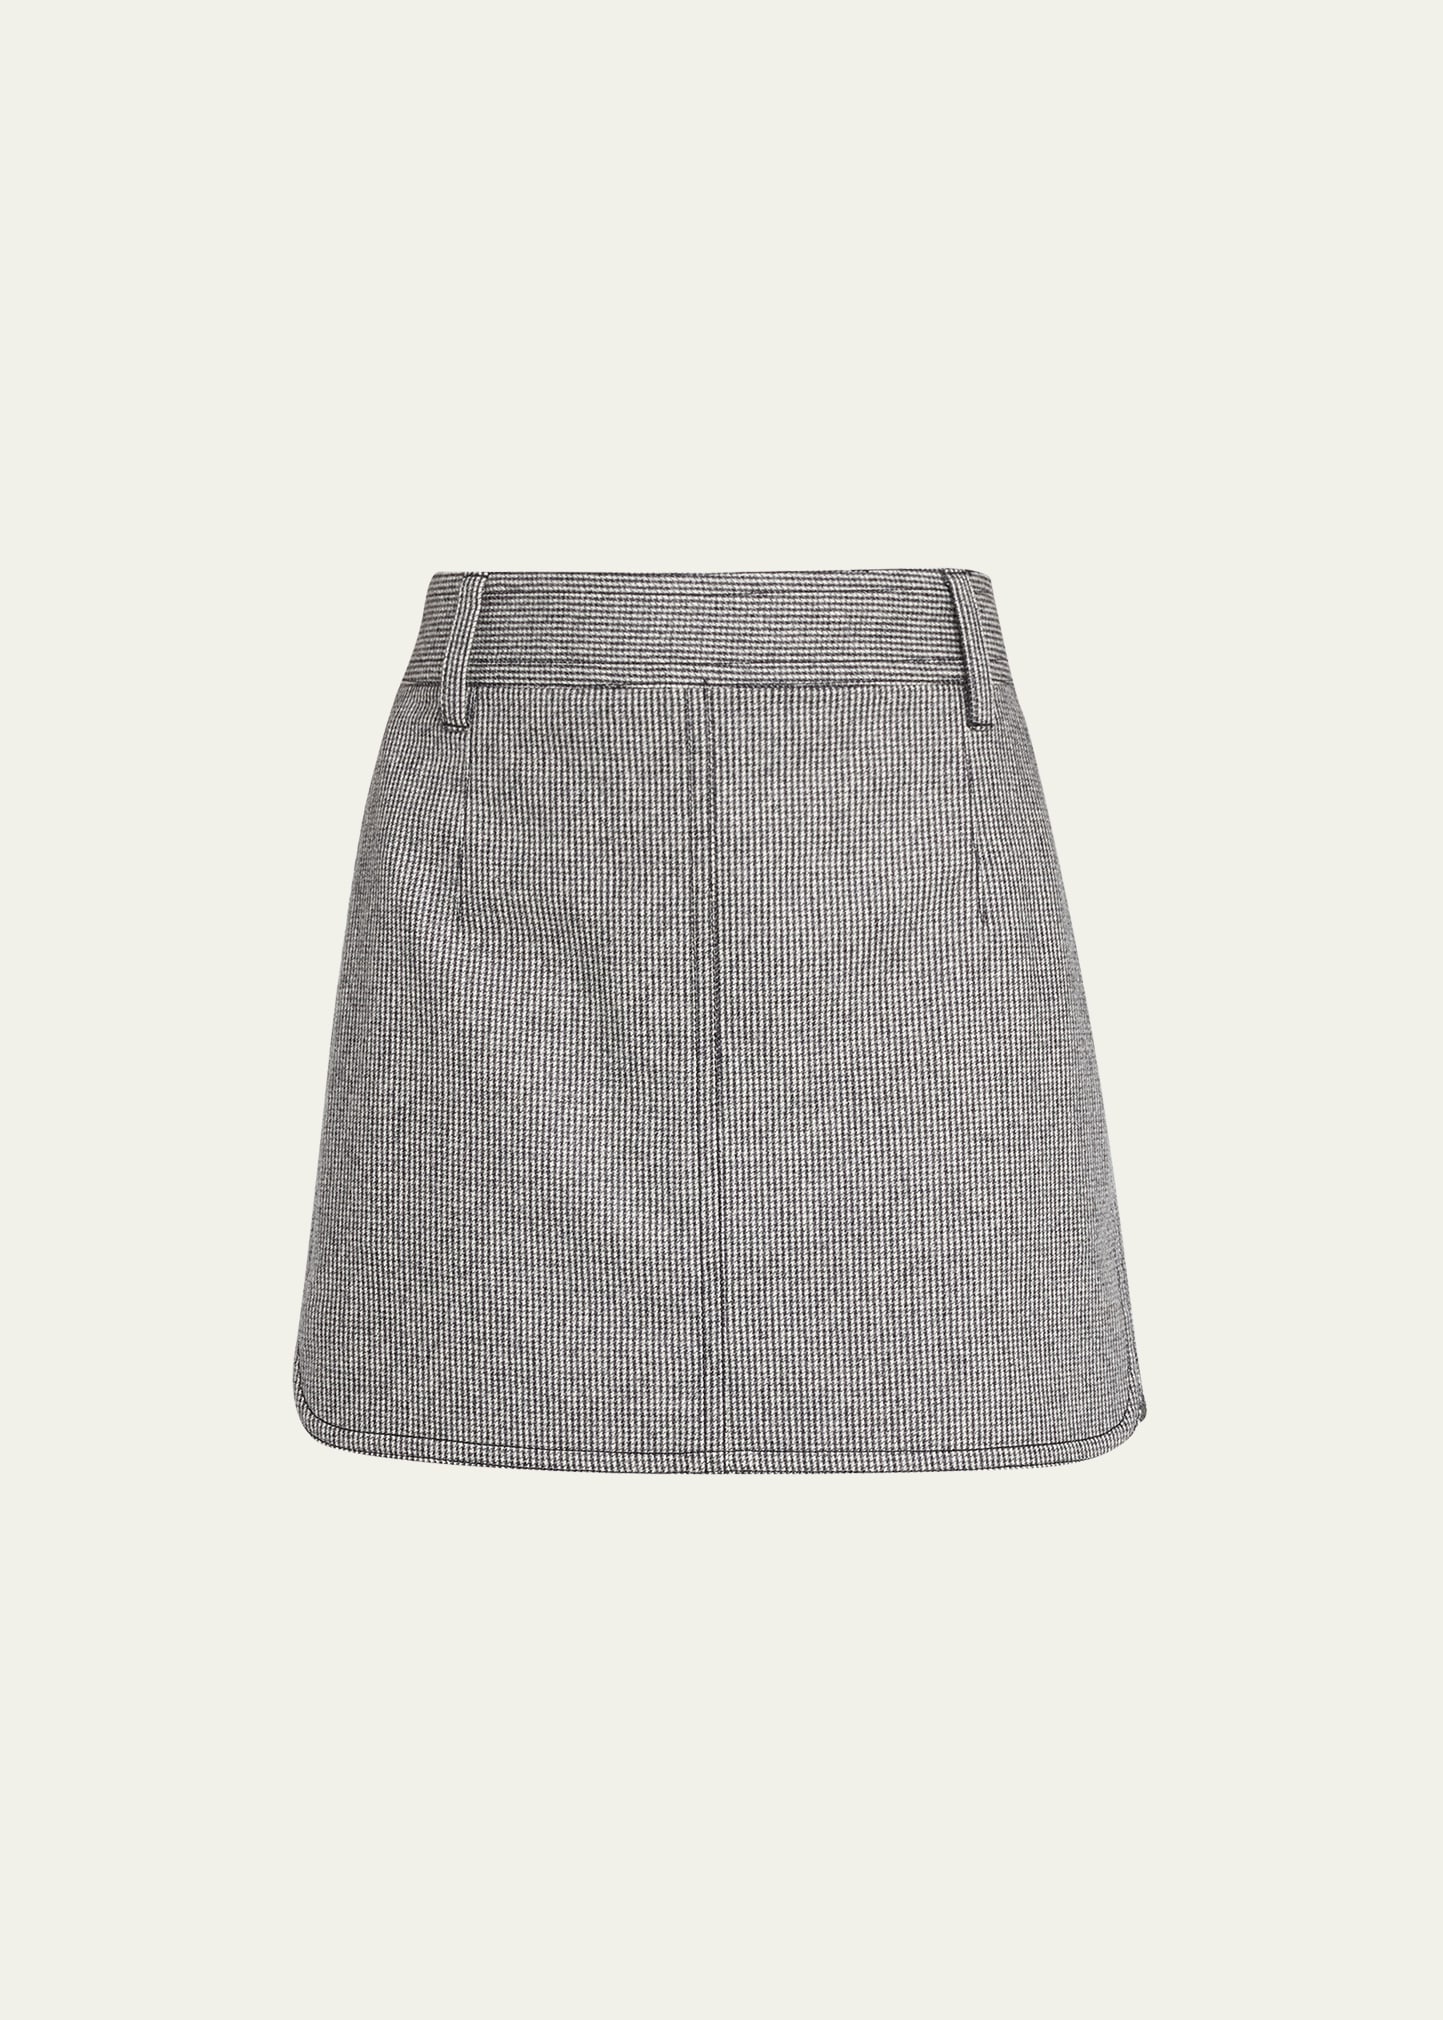 Exposed Zipper Mini Skirt